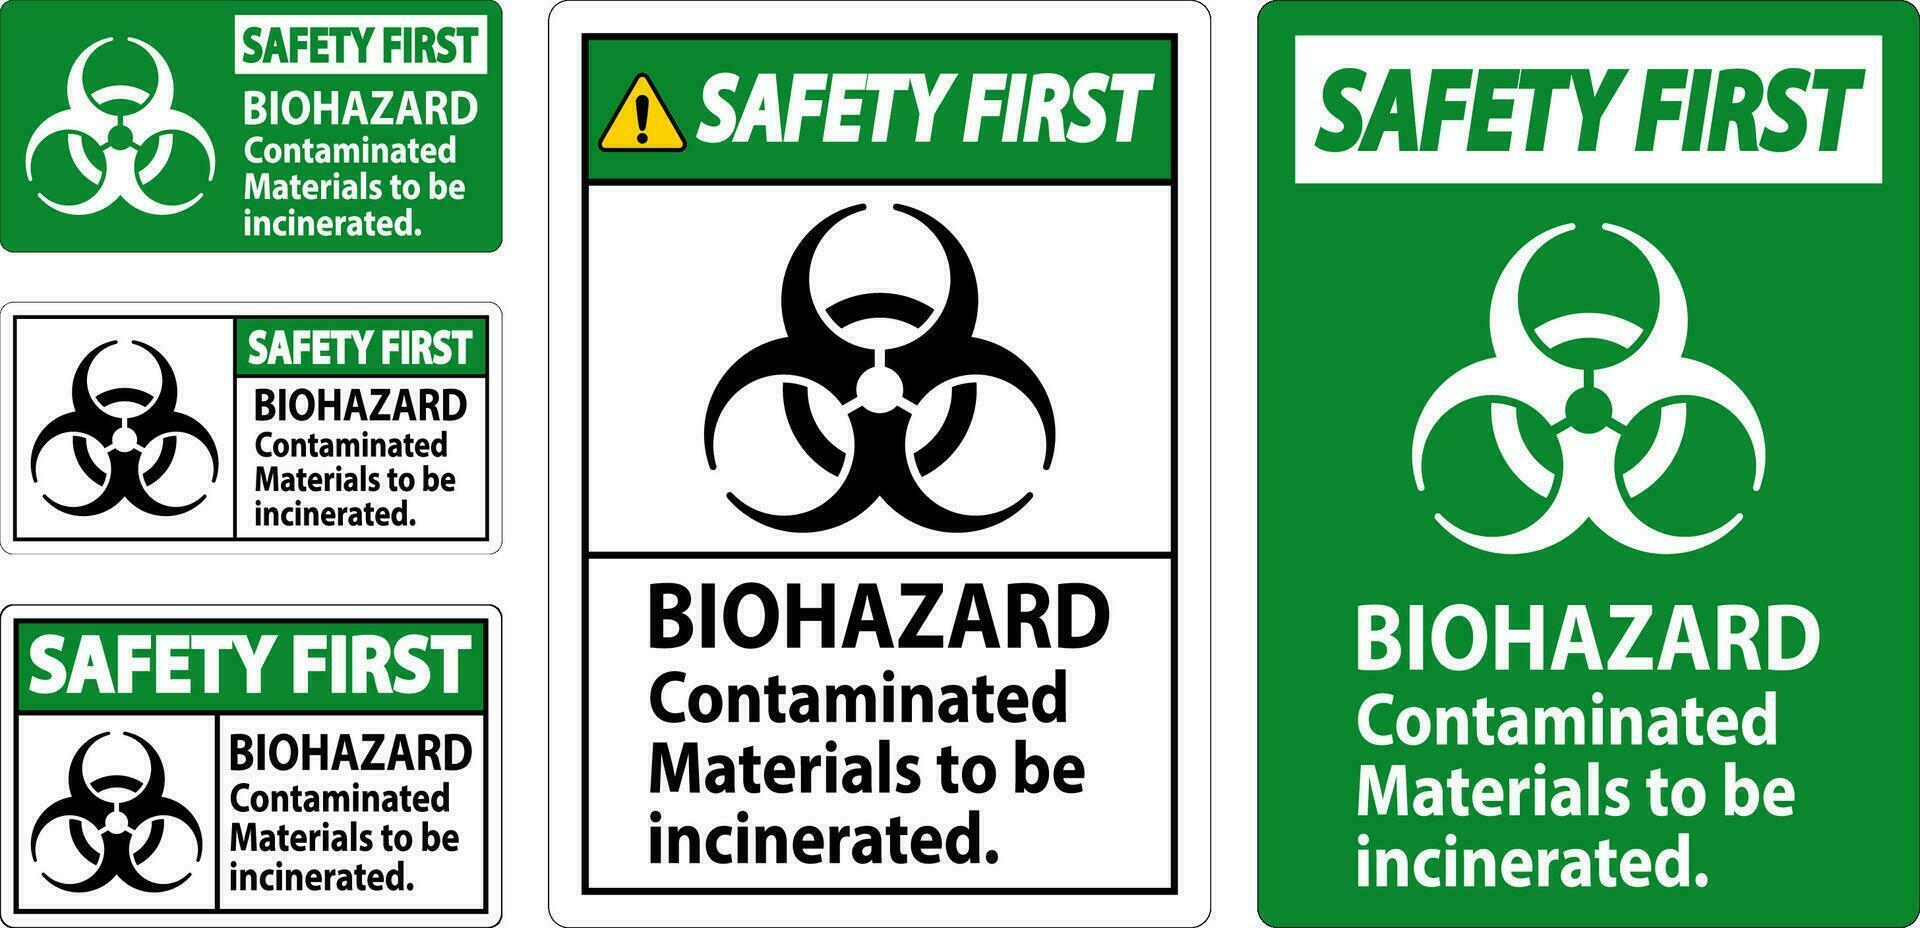 biohazard veiligheid eerste etiket biohazard vervuild materialen naar worden verbrand vector